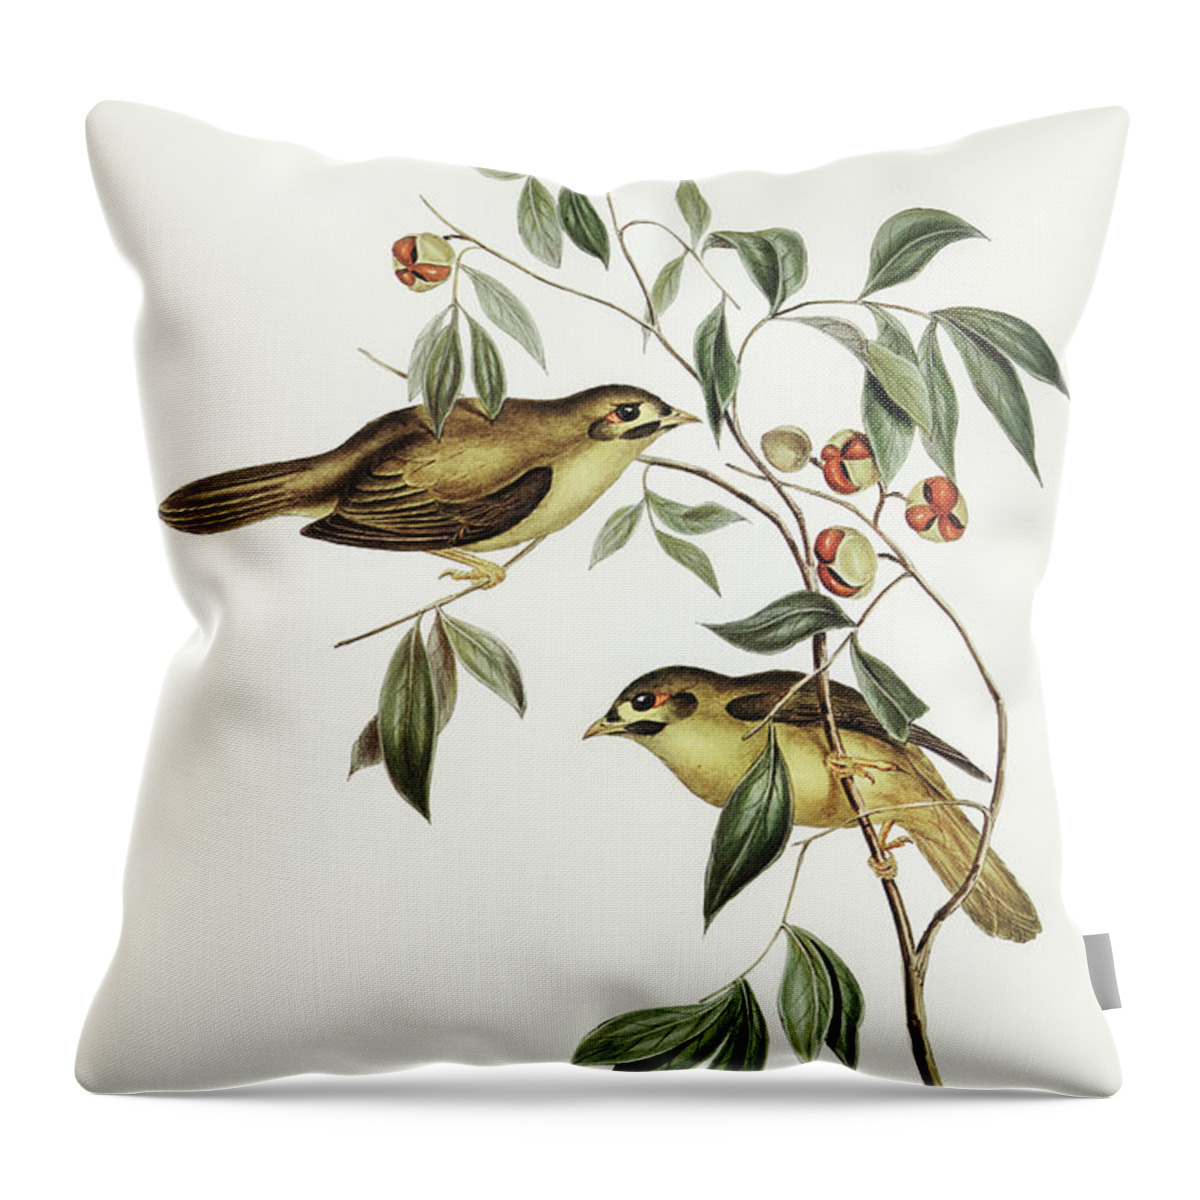 Australian Bell Bird Throw Pillow featuring the drawing Australian Bell Bird, Myzantha melanophrys by John Gould